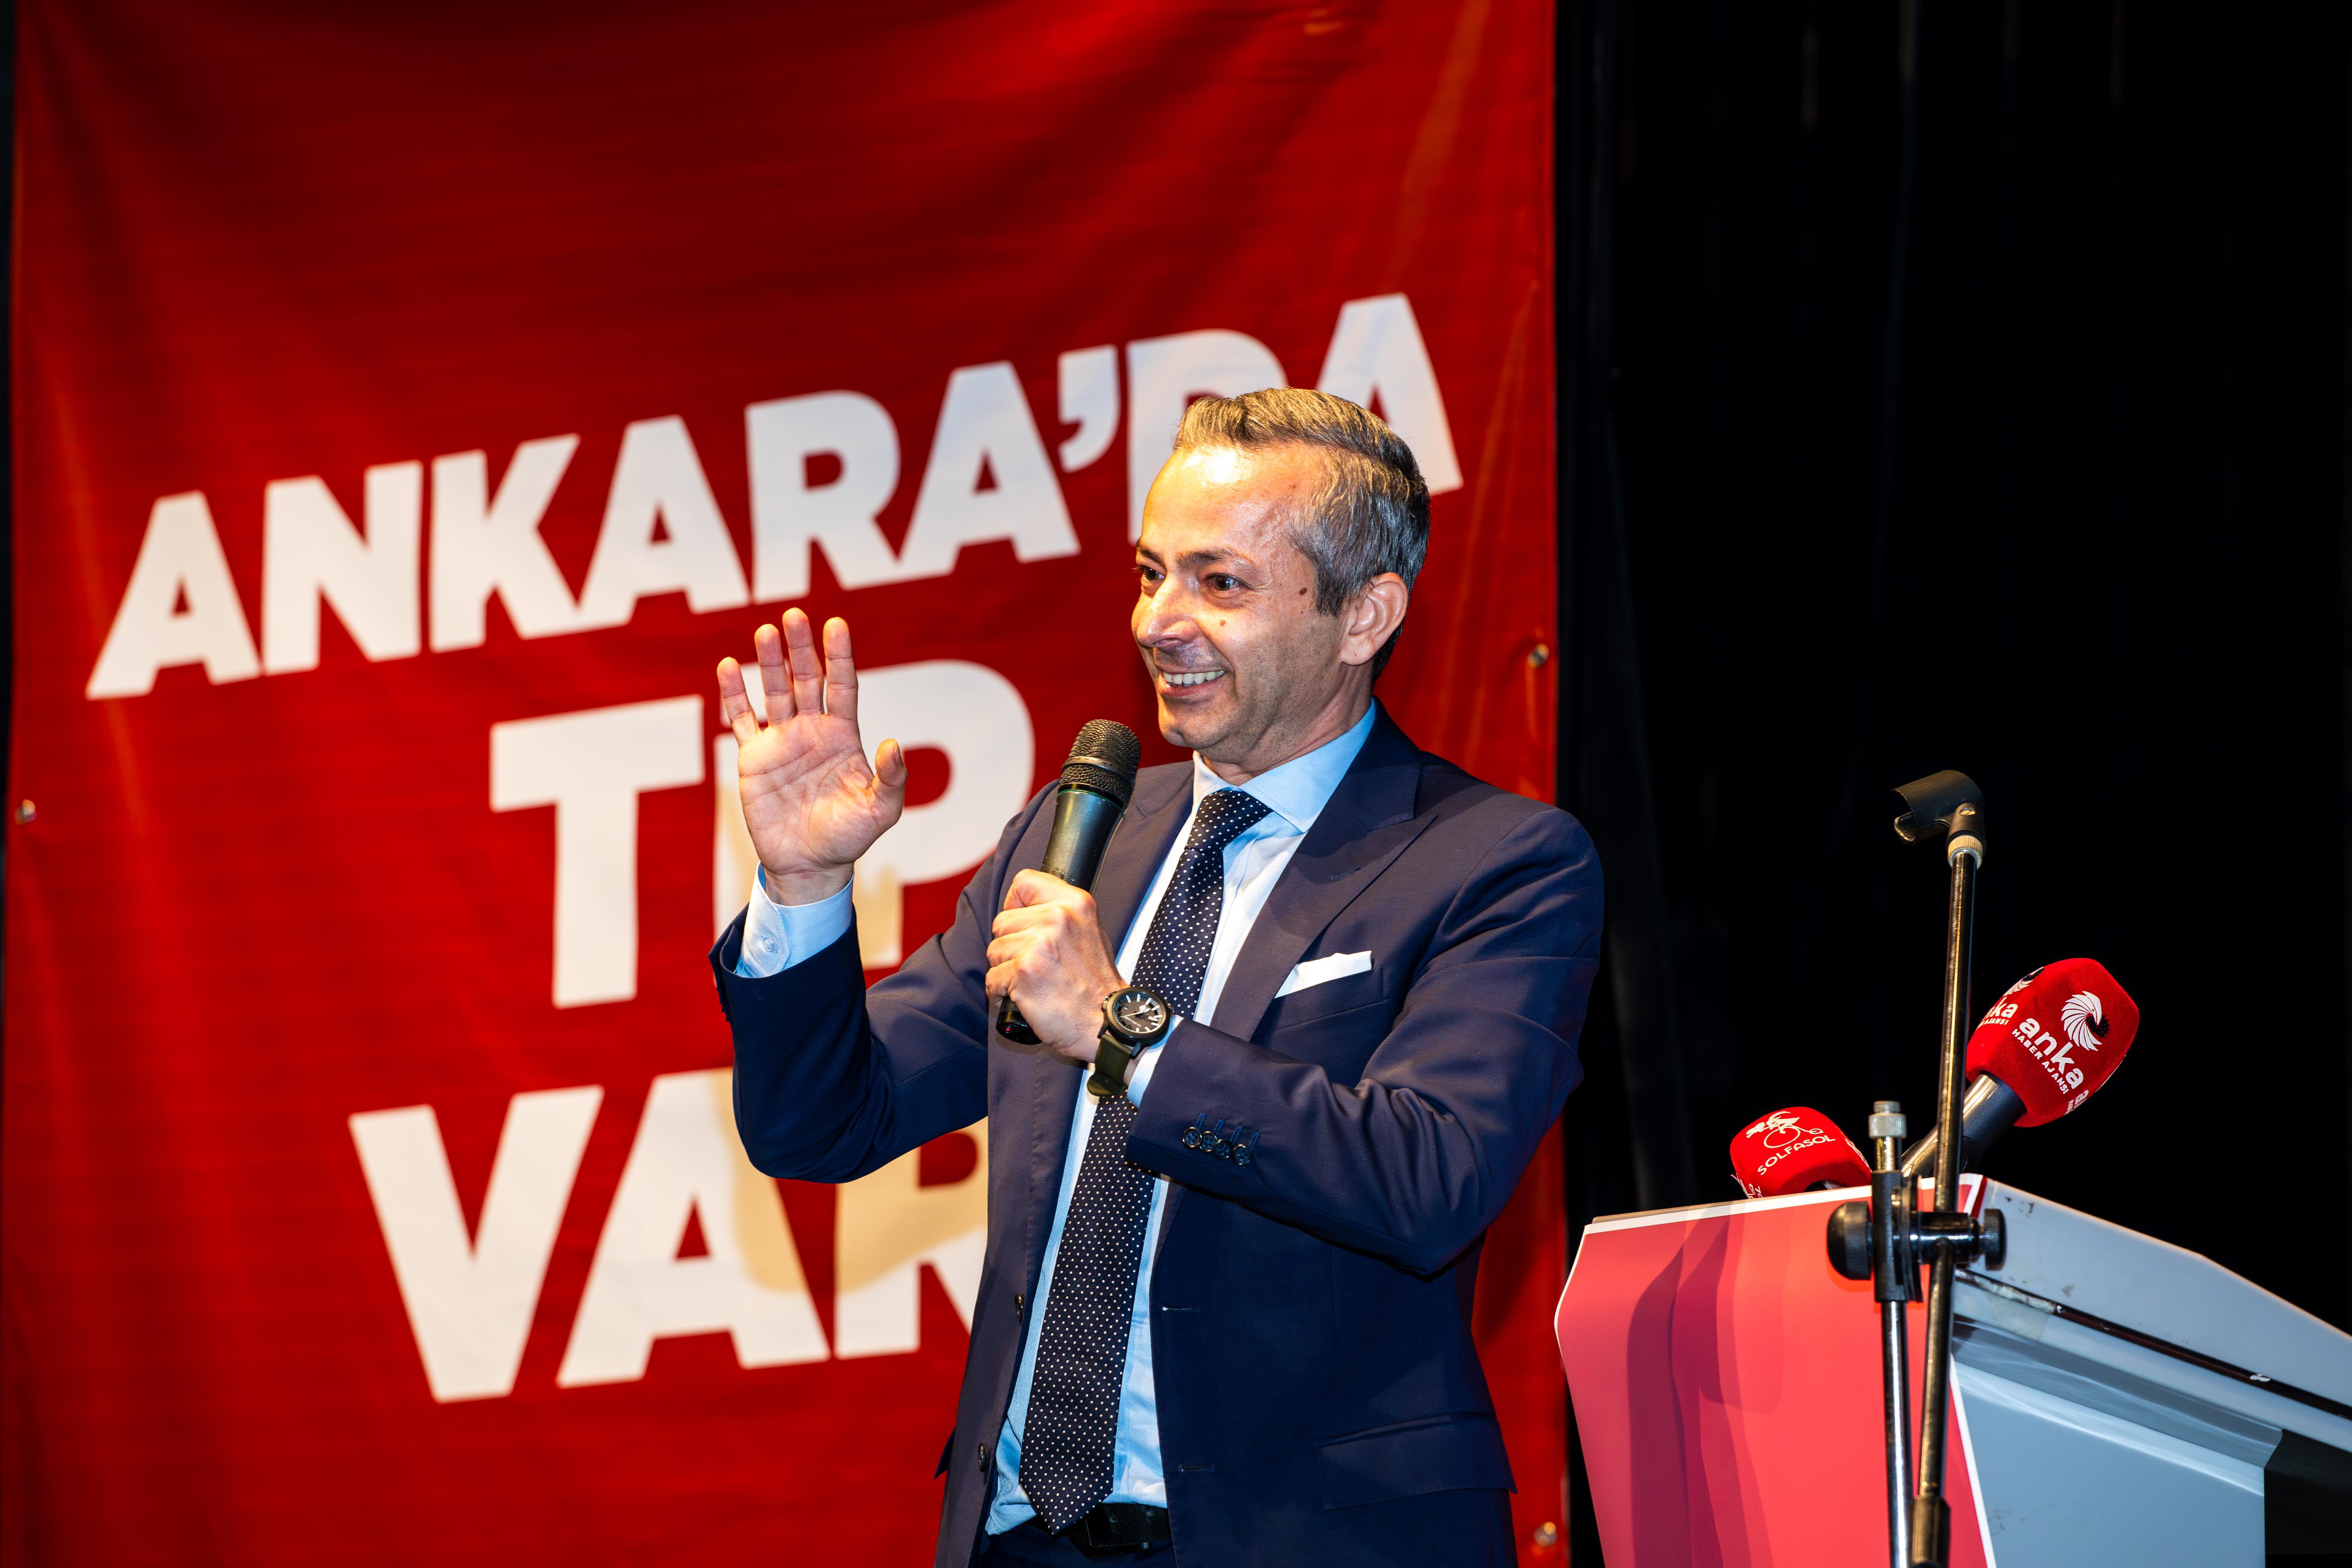 TİP'in Ankara adayları tanıtıldı: 5 sene sonra size gönül rahatlığıyla hesabımı vereceğim